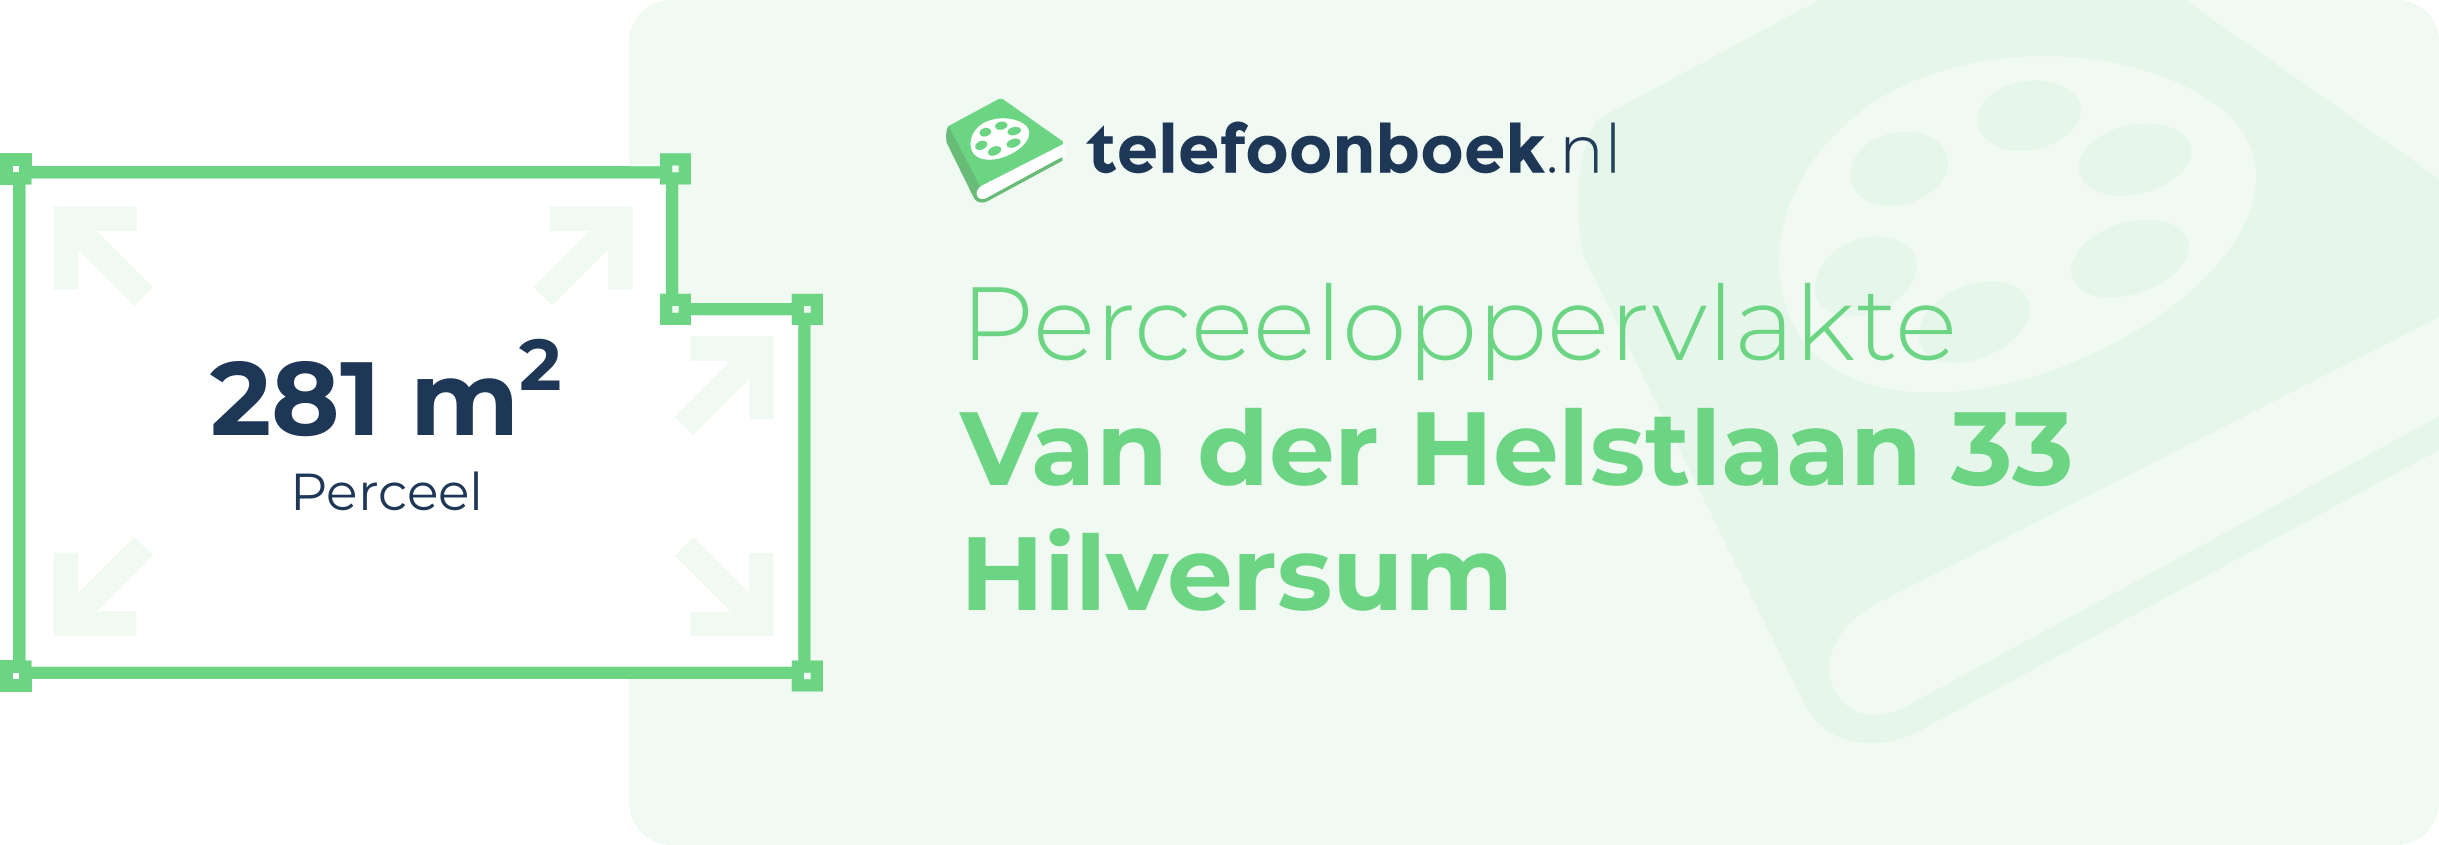 Perceeloppervlakte Van Der Helstlaan 33 Hilversum